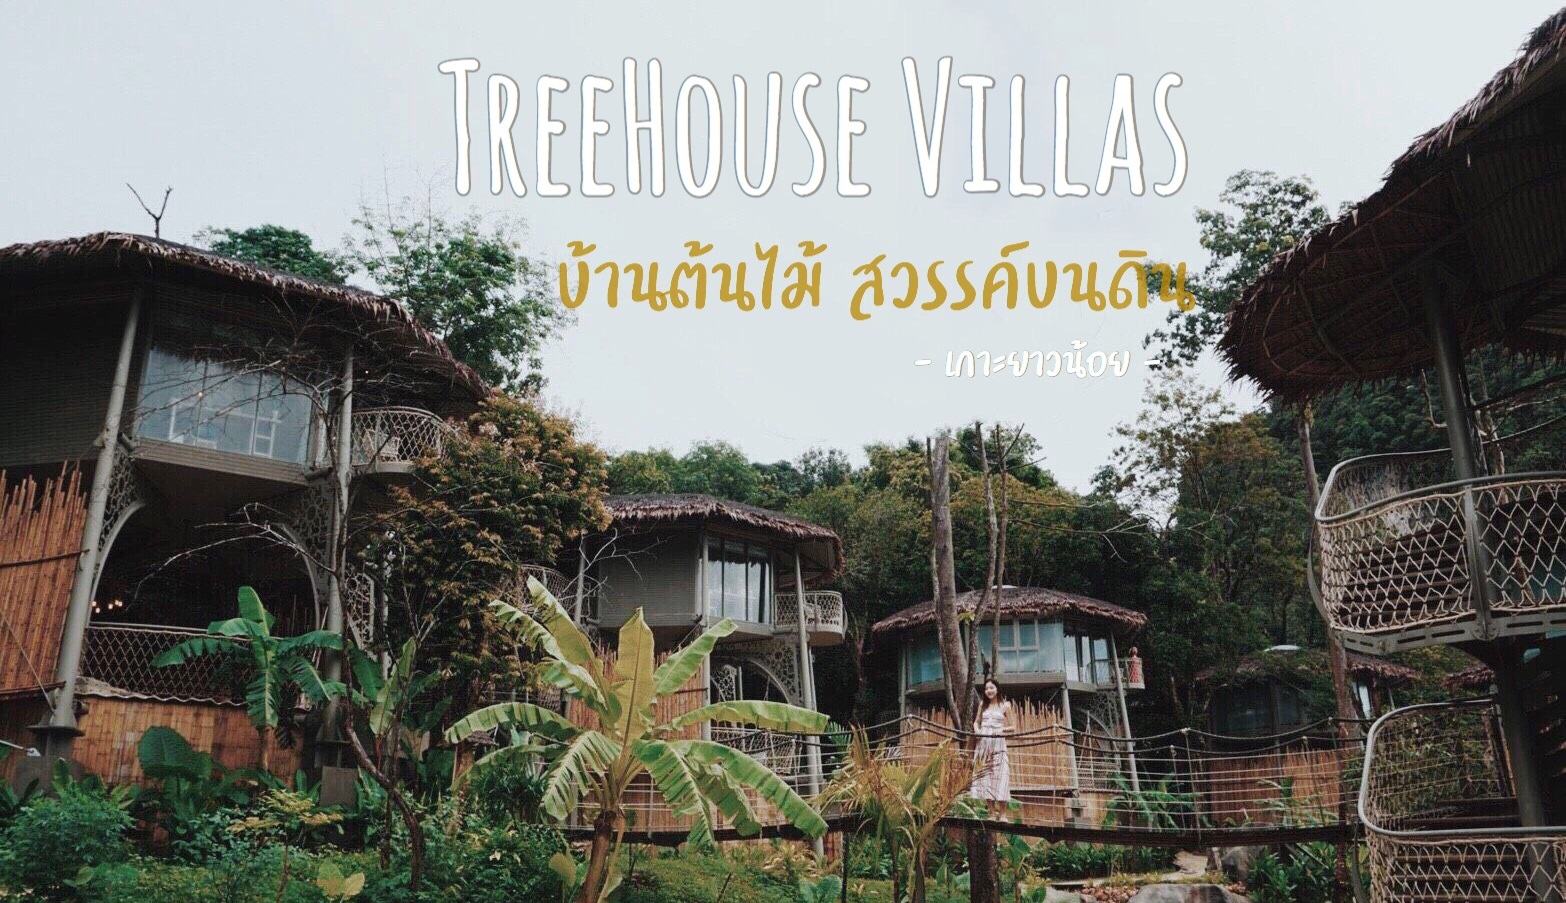 TreeHouse Villas จังหวัดพังงา ทรีเฮ้าส์ วิลล่าส์ ที่พักพังงา ที่พักเกาะยาวน้อย ที่เที่ยวเกาะ ที่เที่ยวเกาะยาวน้อย บ้านต้นไม้ เกาะยาวน้อย เขาช้างหมอบ